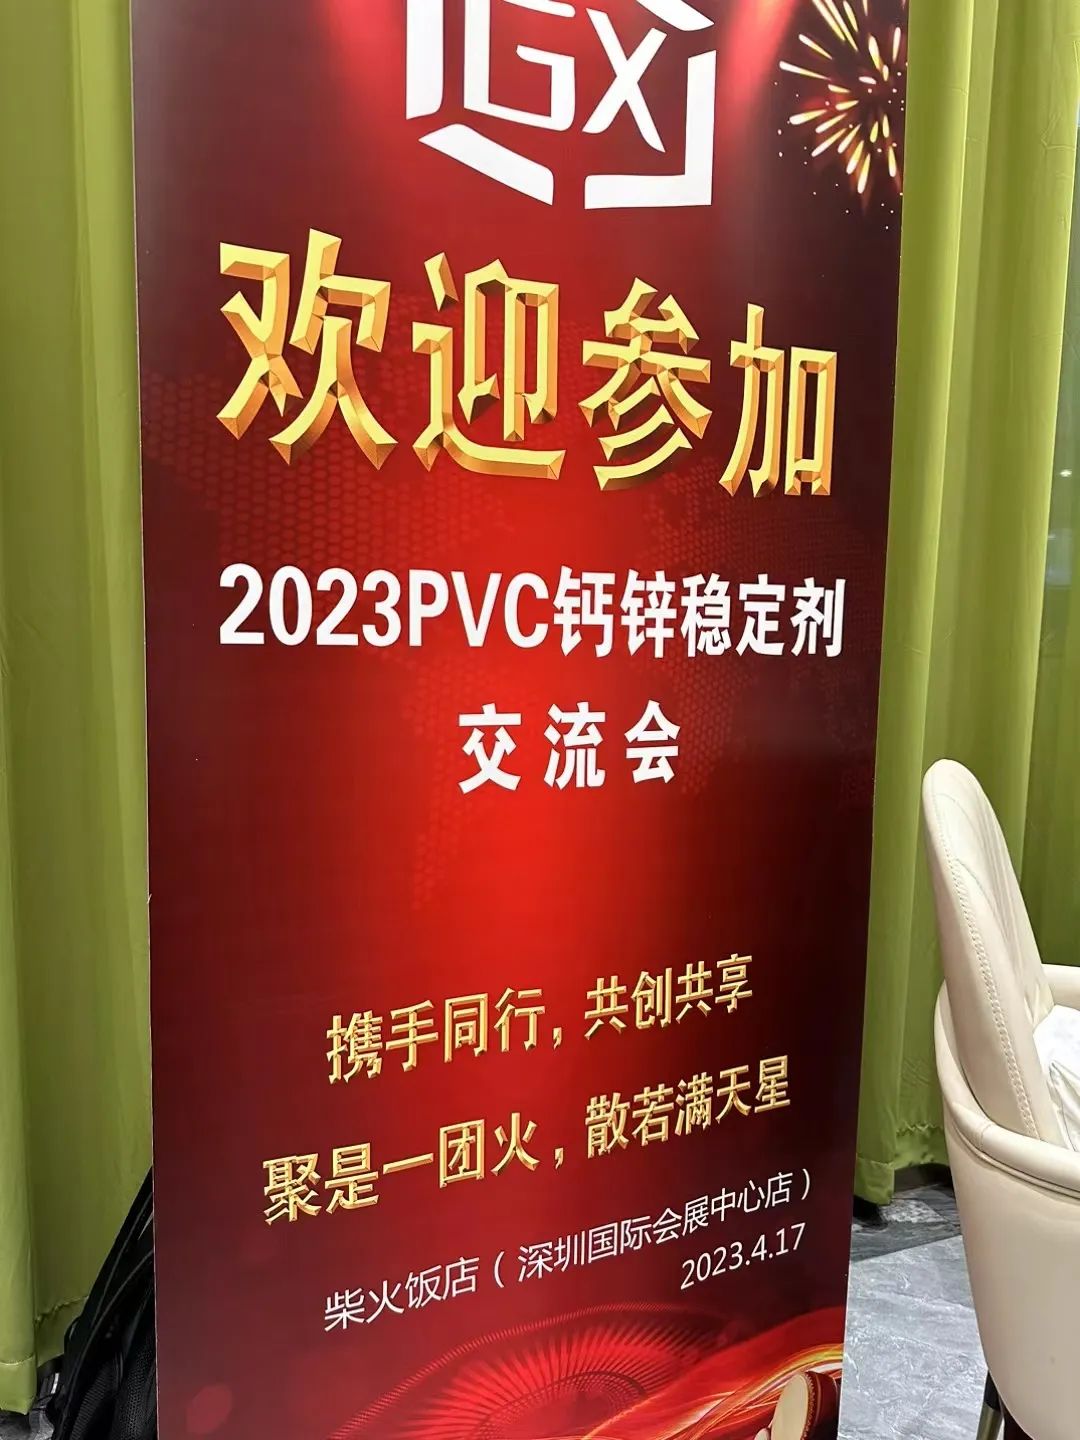 2023年PVC钙锌稳定剂交流会成功举办